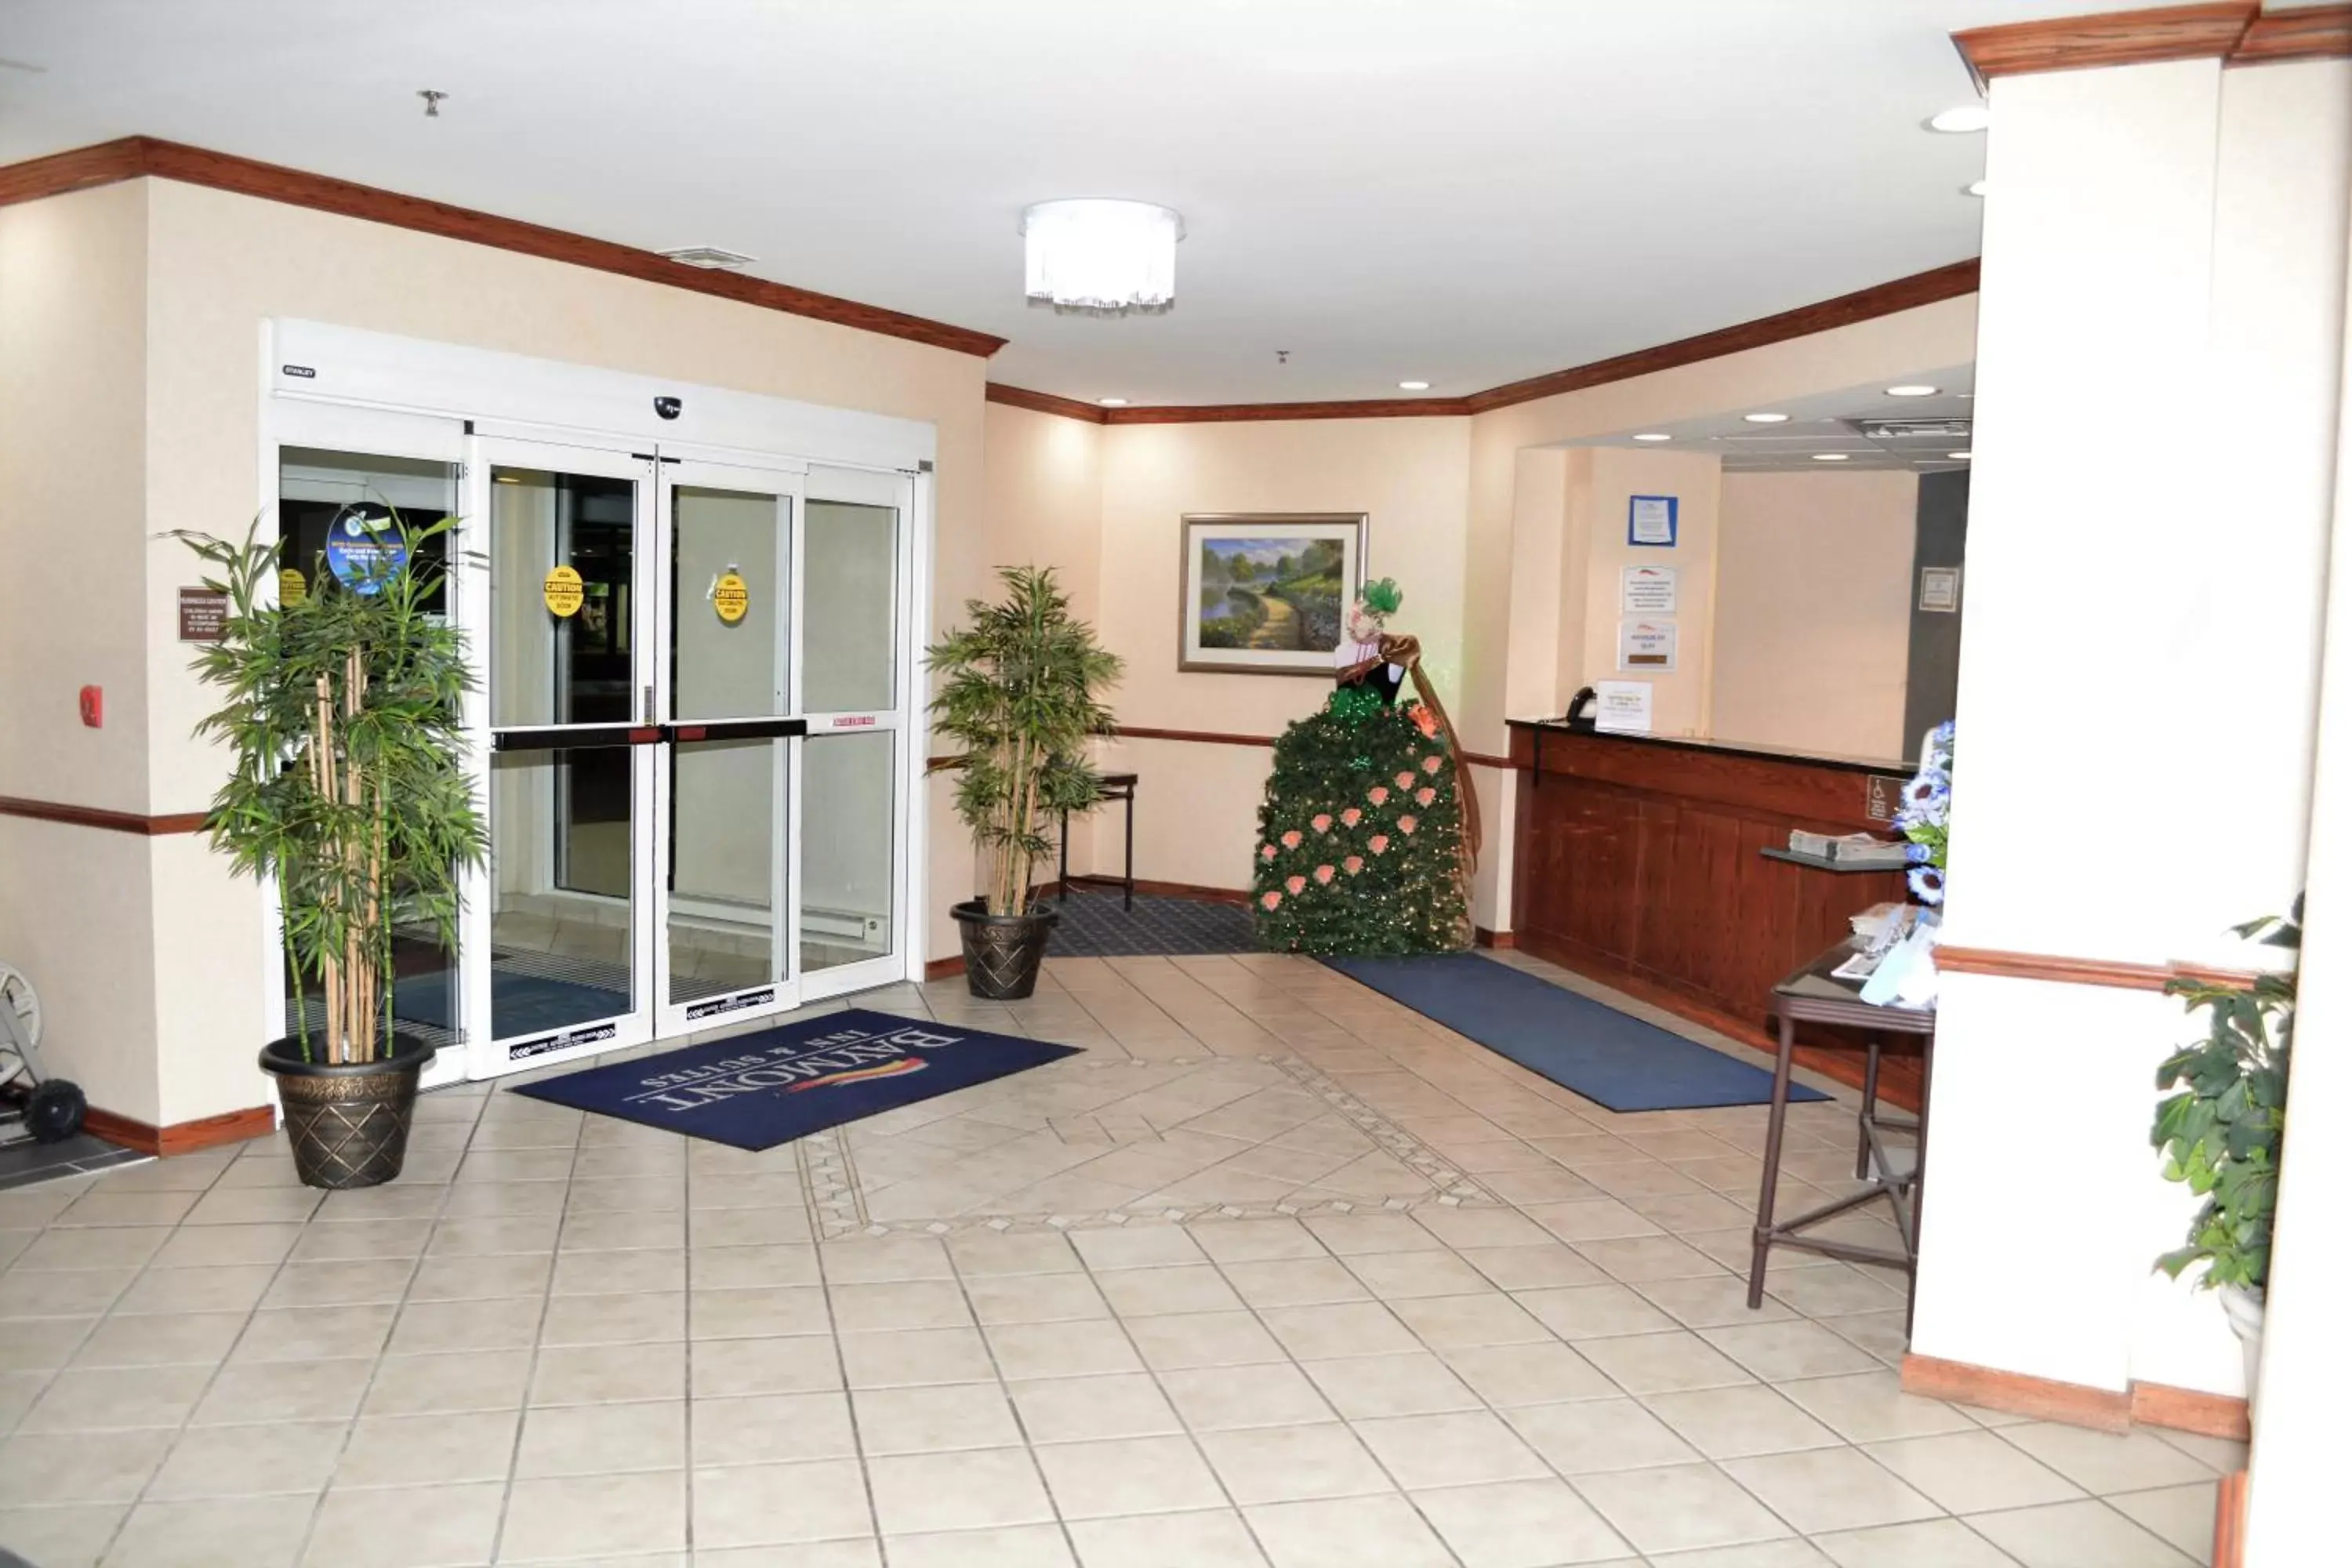 Lobby or reception, Lobby/Reception in Baymont by Wyndham Waterford/Burlington WI